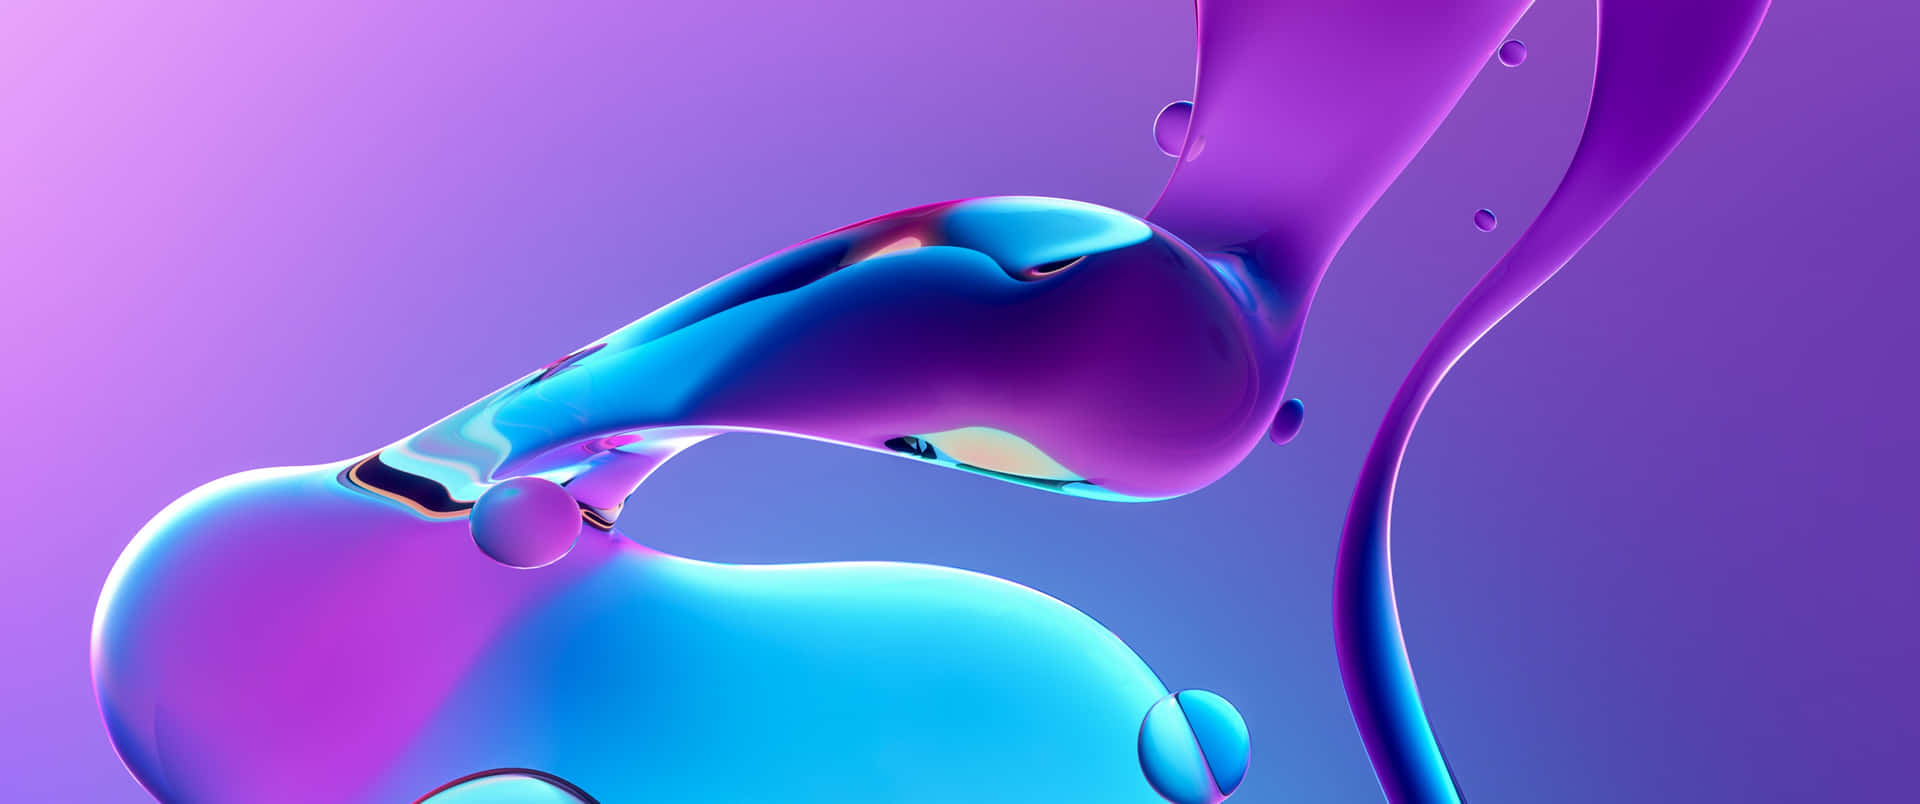 Landscape Blue And Purple Gradient Liquid Background